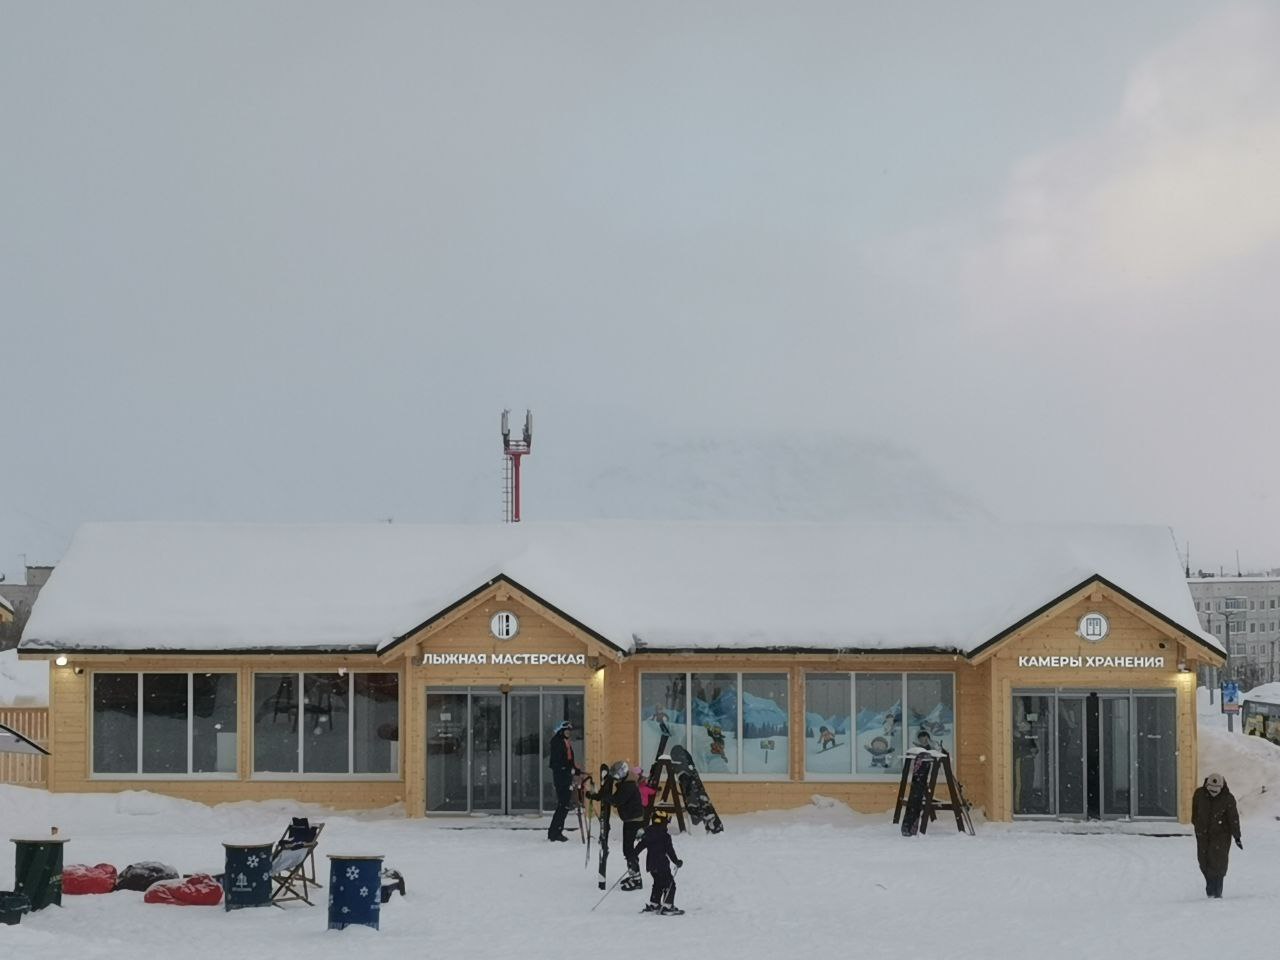 За прокатом на северном склоне есть еще одно здание, где можно обслужить лыжи и доску, переодеться в кабинке и арендовать шкафчик в камере хранения